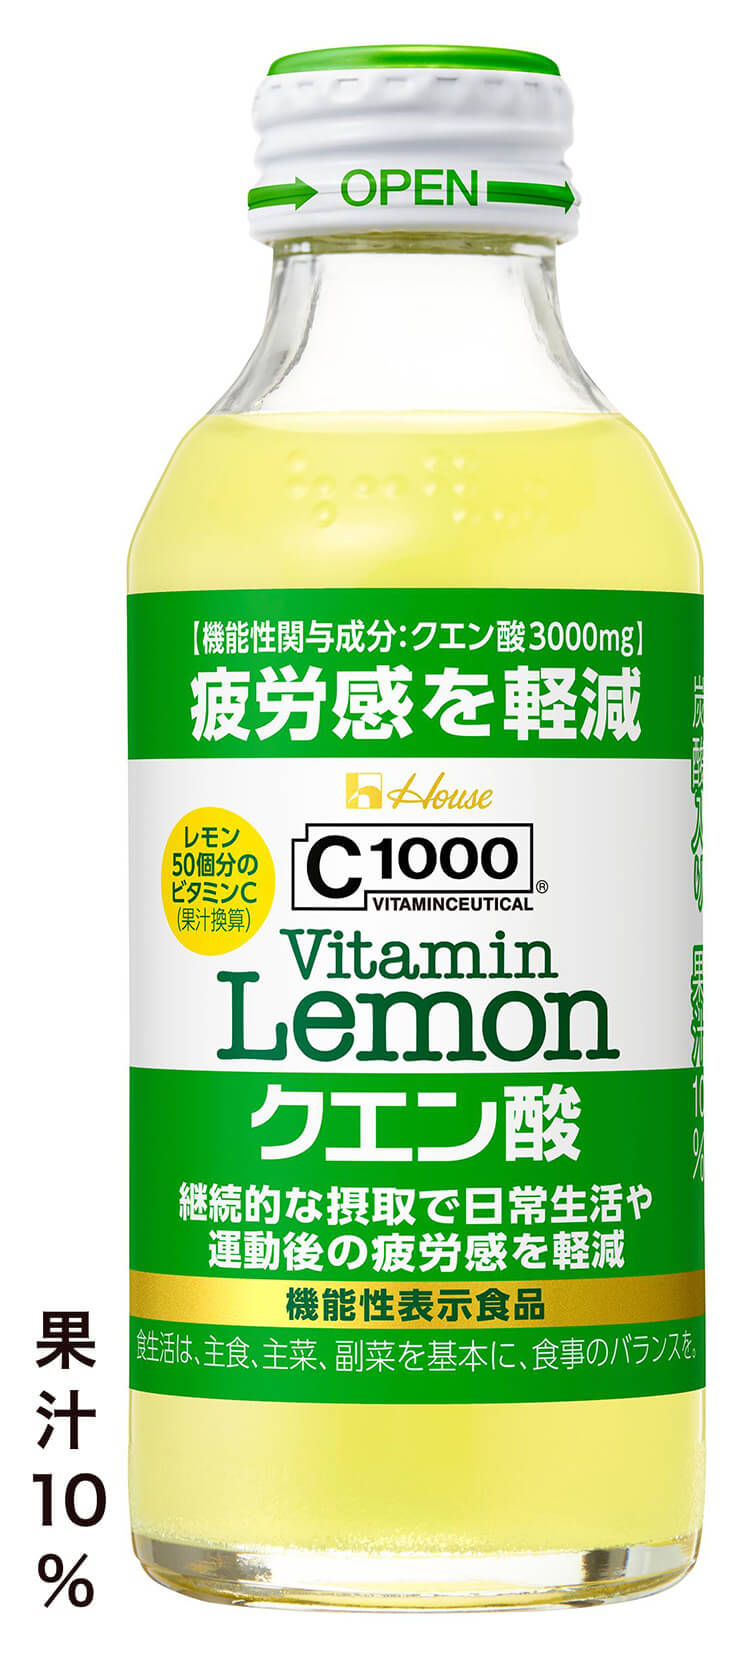 C1000ビタミンレモン クエン酸